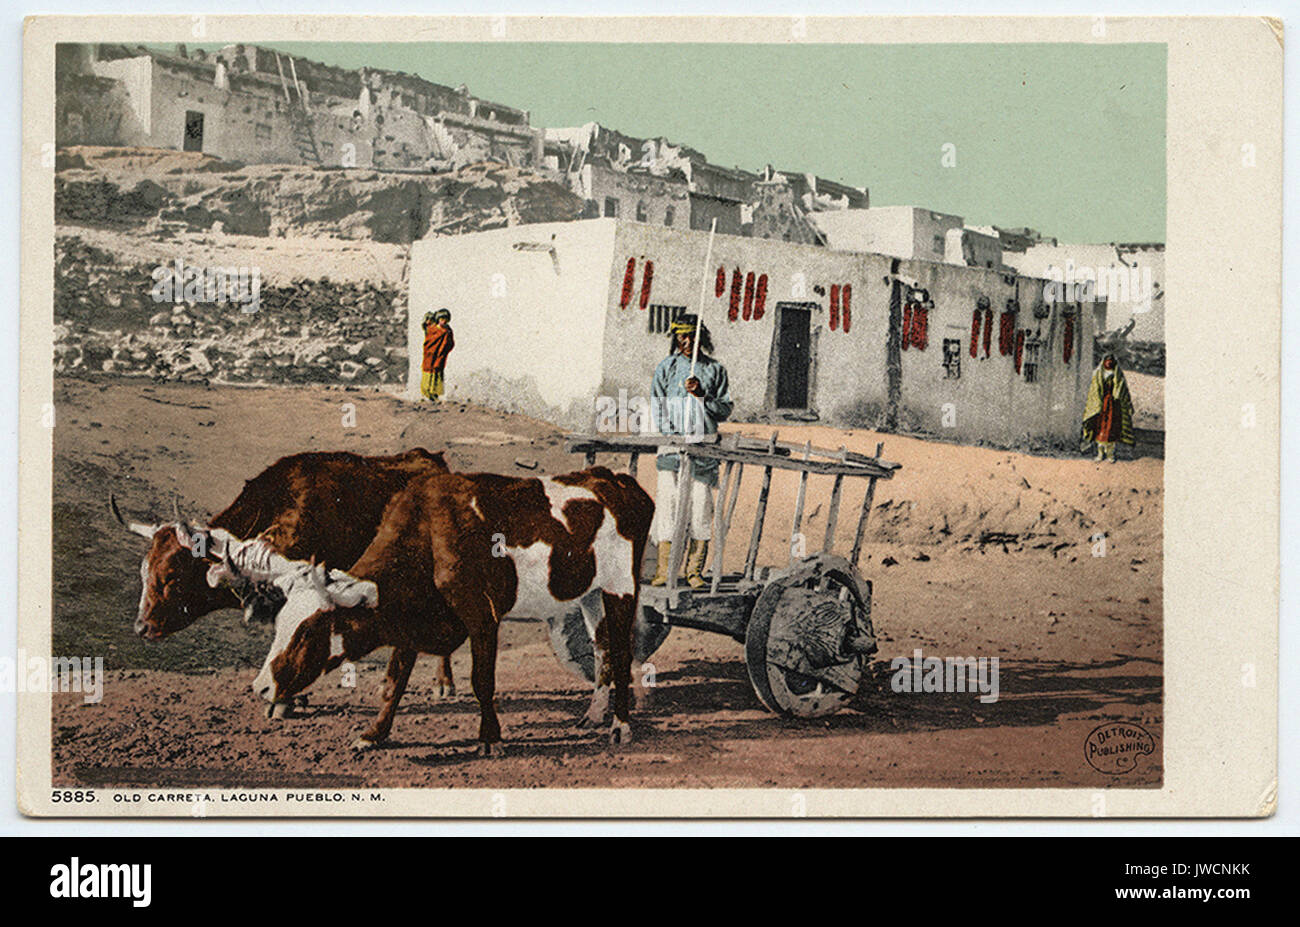 Vecchio Carreta, Laguna Pueblo, N. M. - American Indian Cartoline Foto Stock